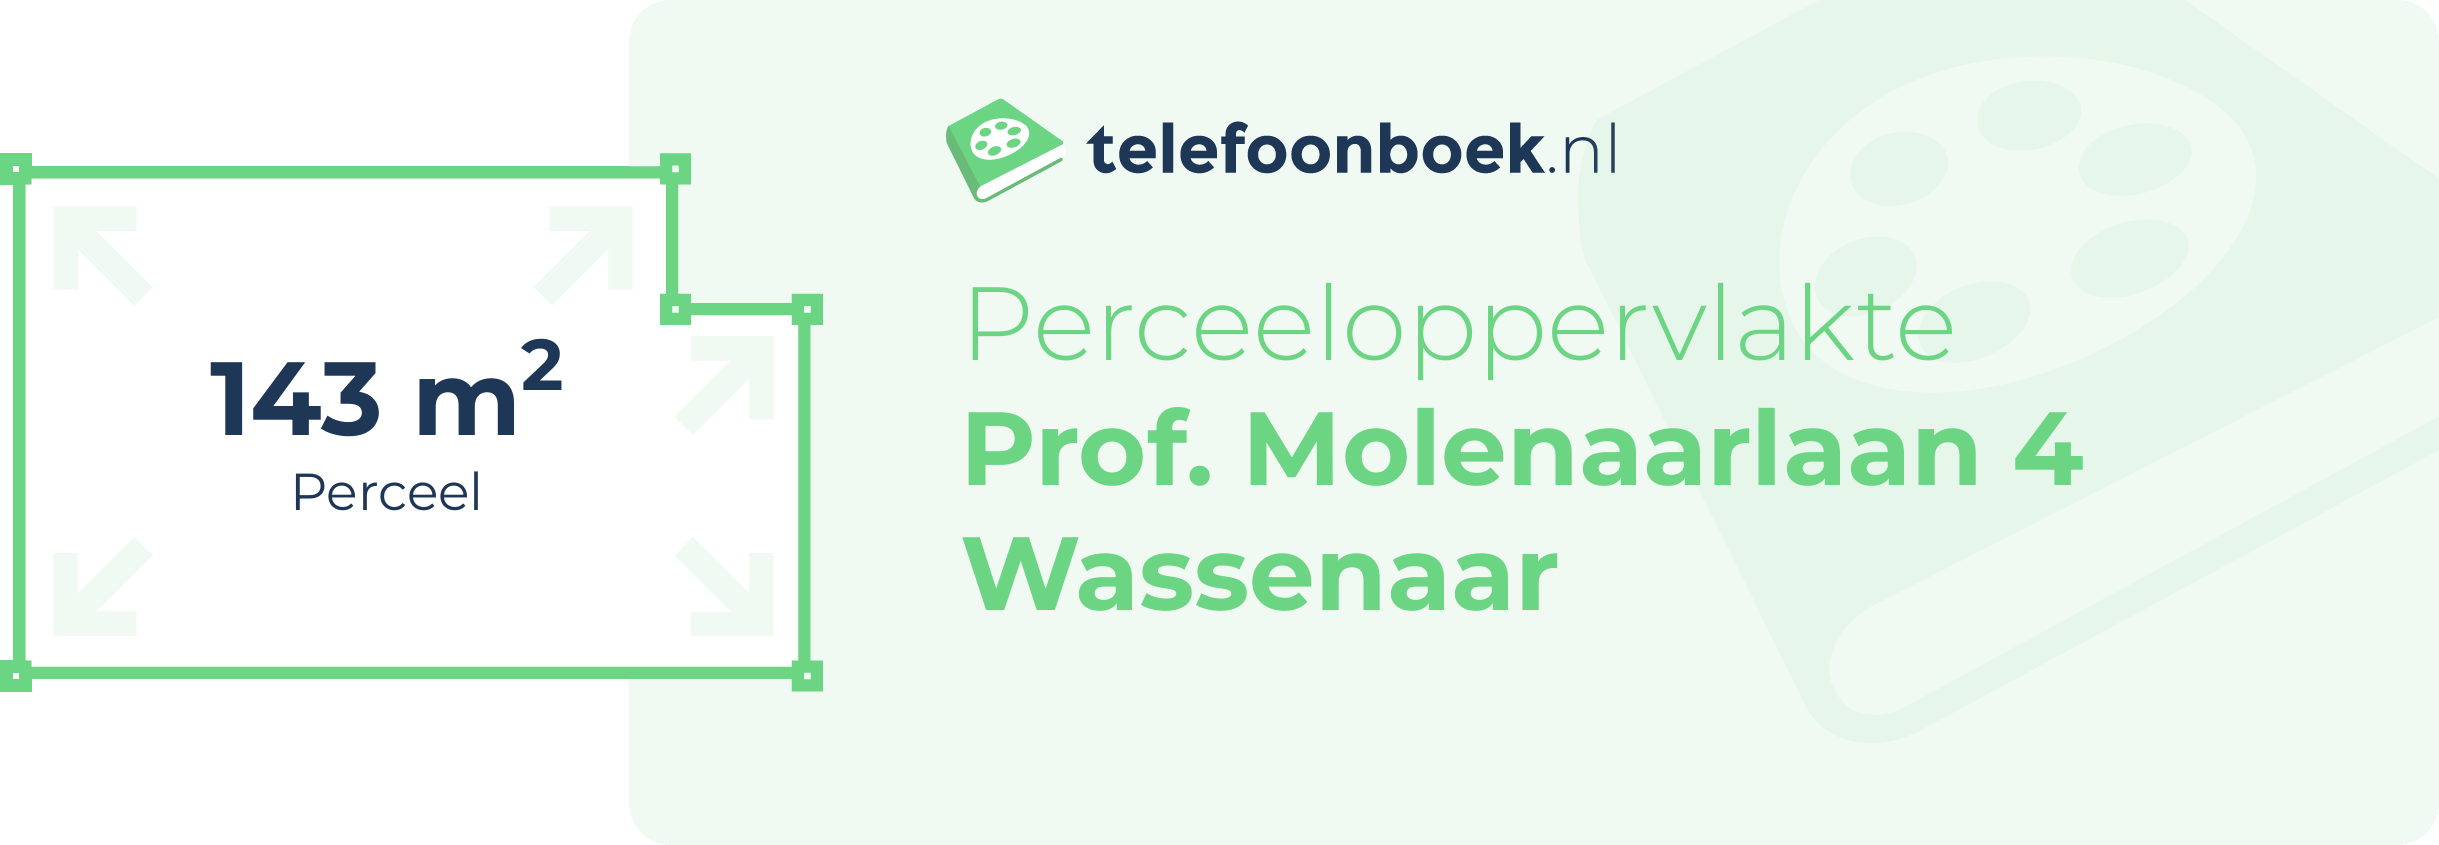 Perceeloppervlakte Prof. Molenaarlaan 4 Wassenaar